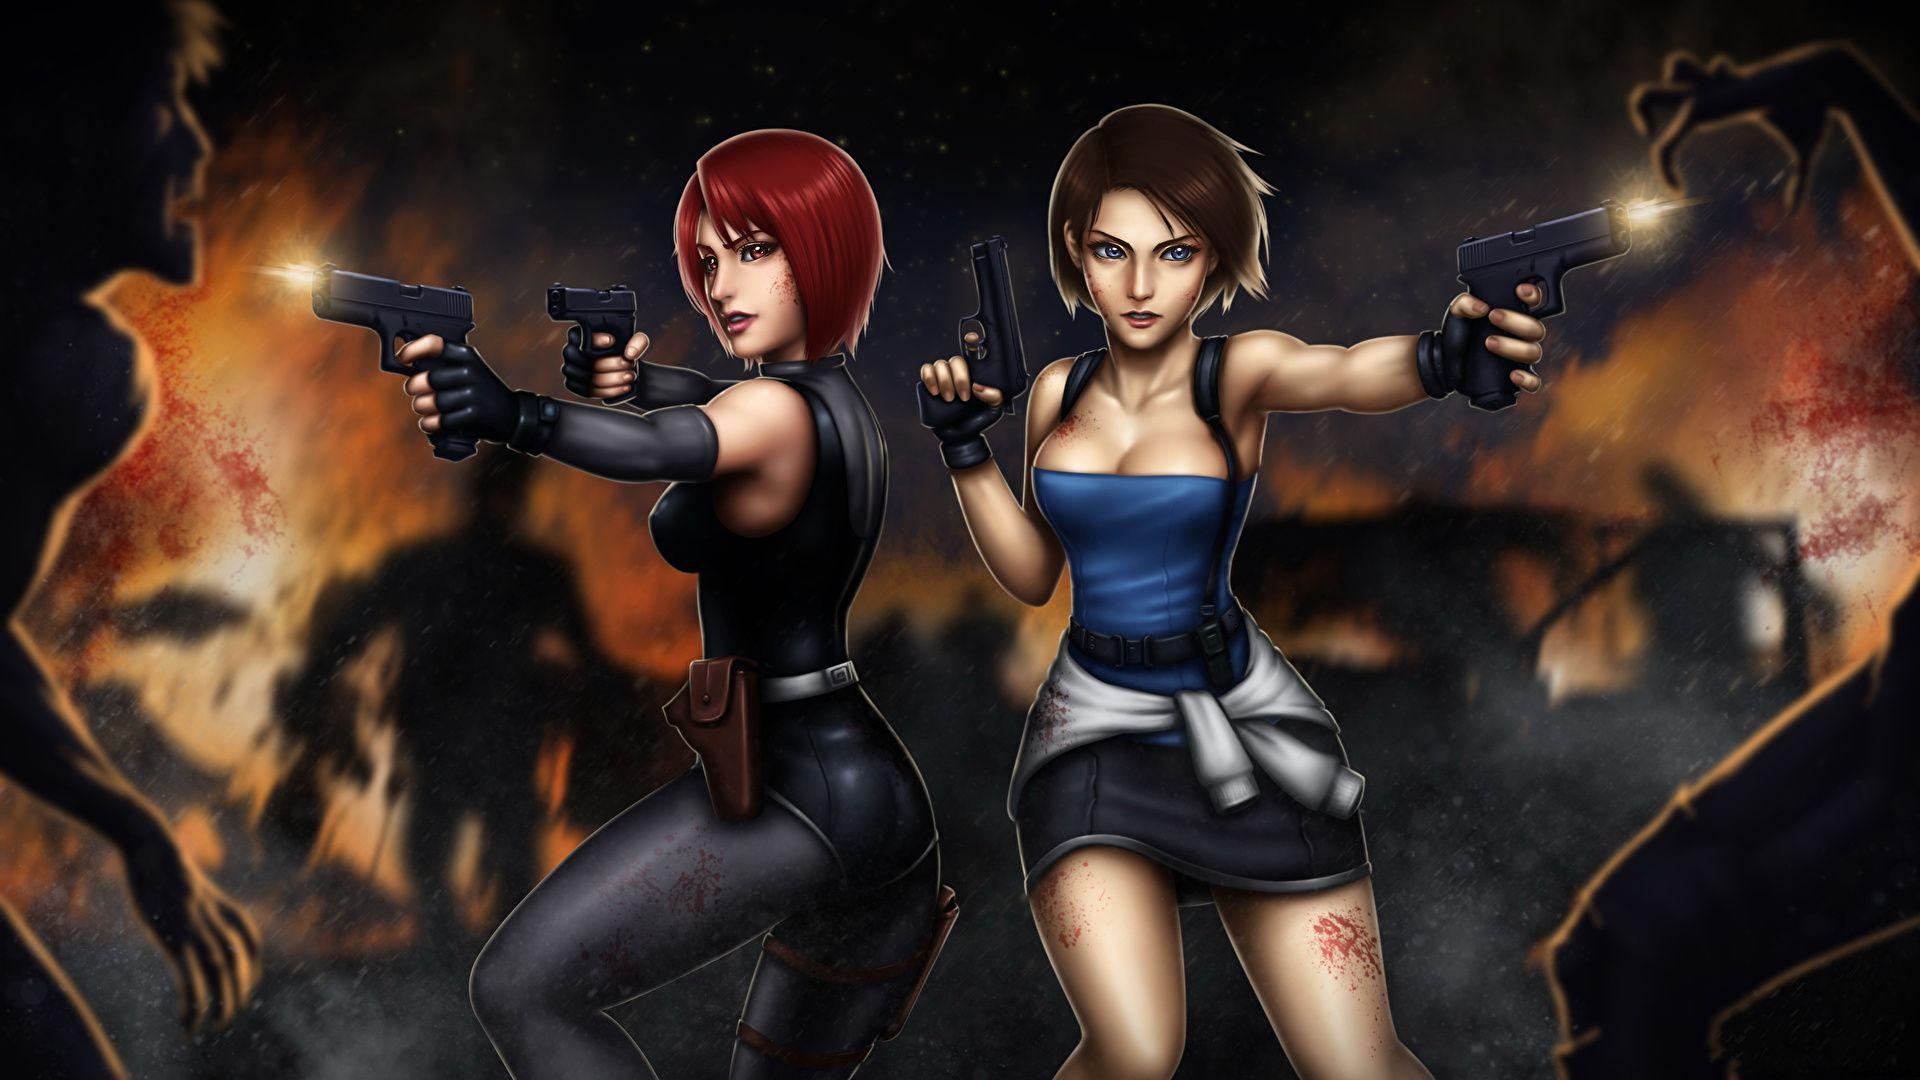 Wallpaper Resident Evil Zombie Firing Pistols Redhead girl 1920x1080